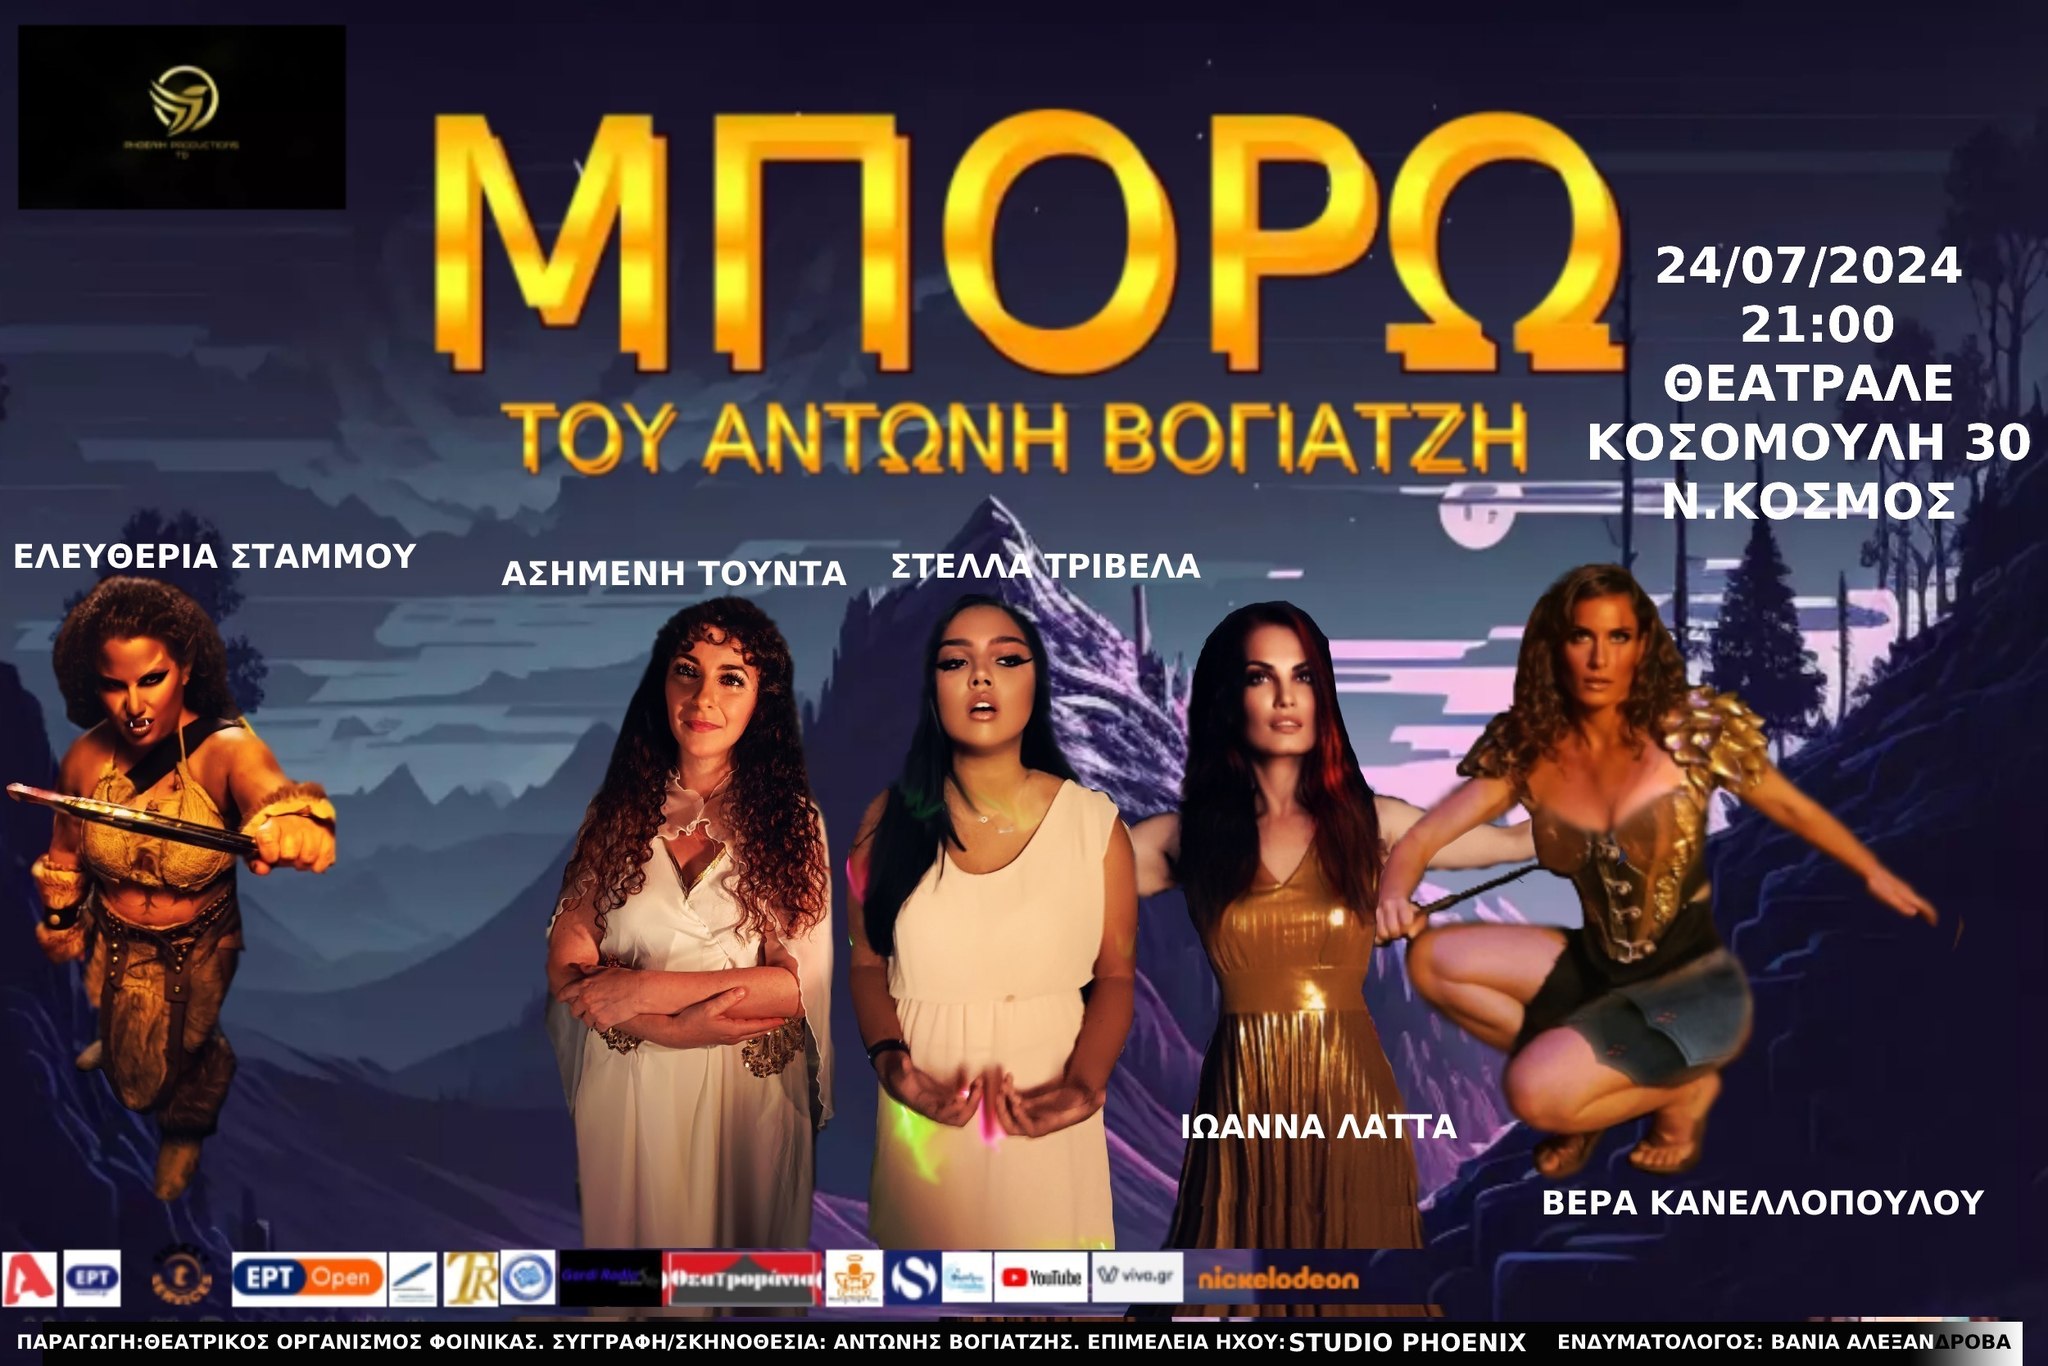 Το θεατρικό ”Μπορώ” του Αντώνη Βογιατζή παρουσιάζεται με επιτυχία σε περιοδεία